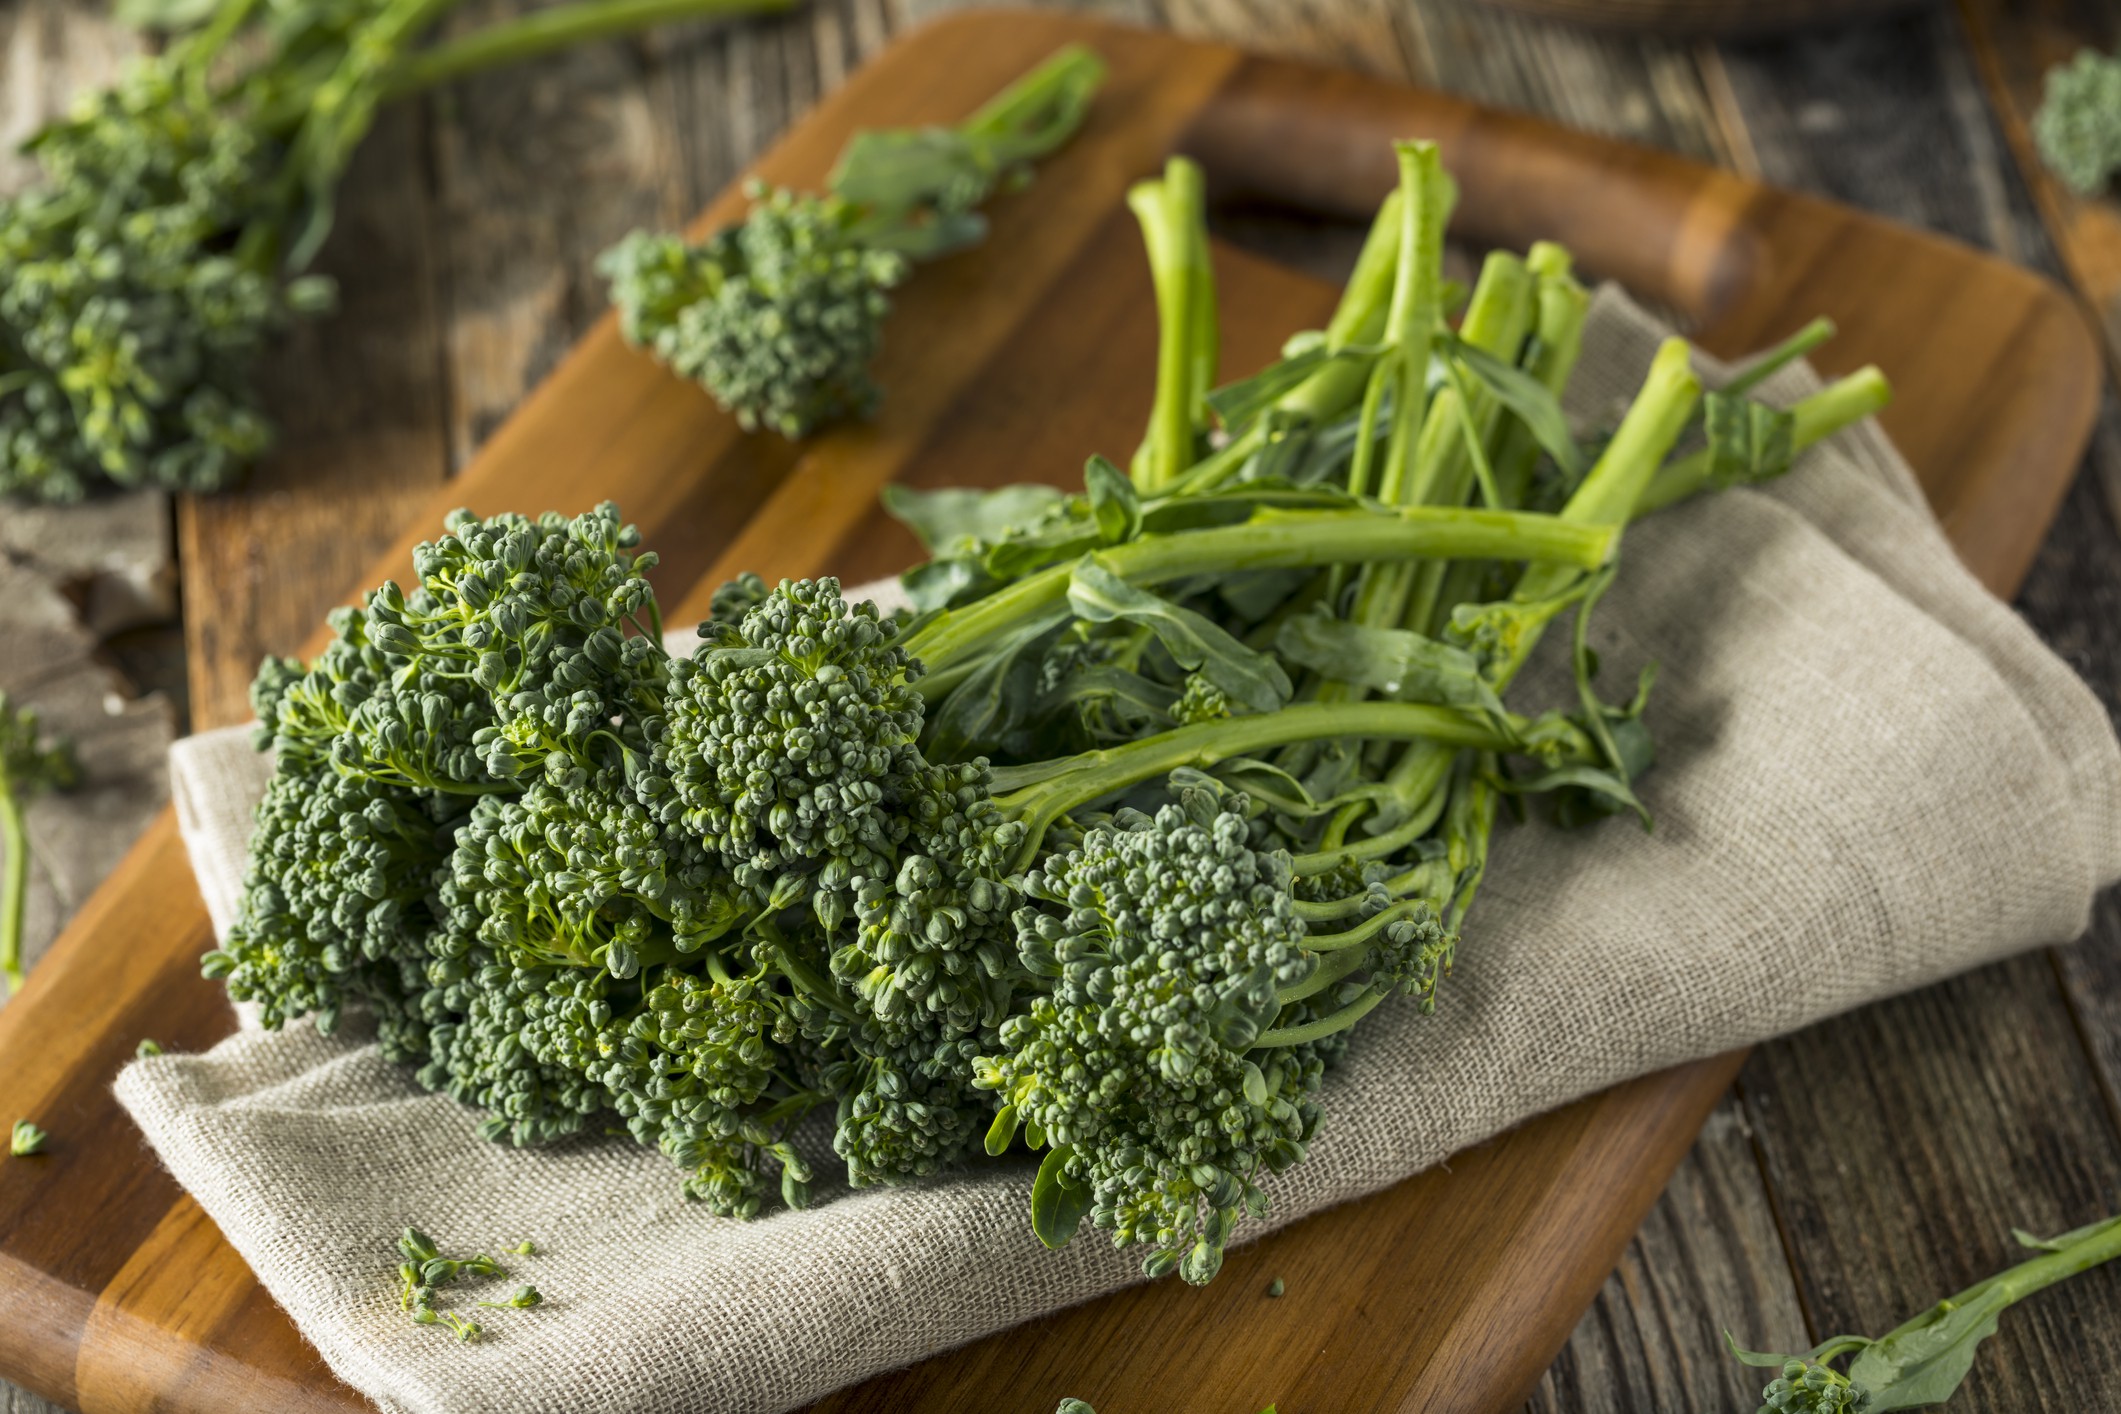 Care este diferența dintre broccoli și broccolini